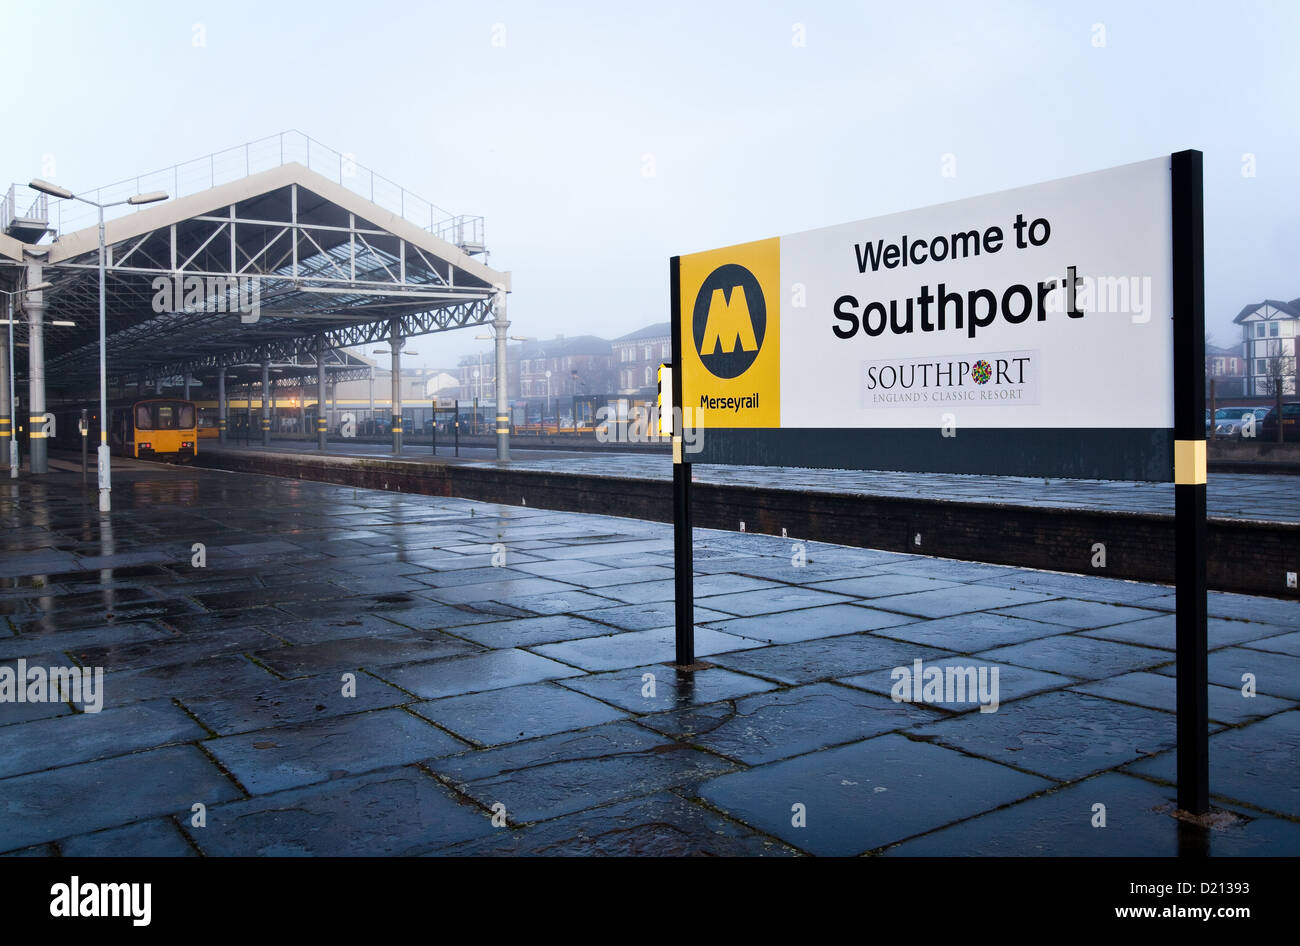 Einladende Bekanntmachung  Fog und Nebel bei Southport Eisenbahn Station  Northern Line Merseyrail Network Merseyside, UK Stockfoto